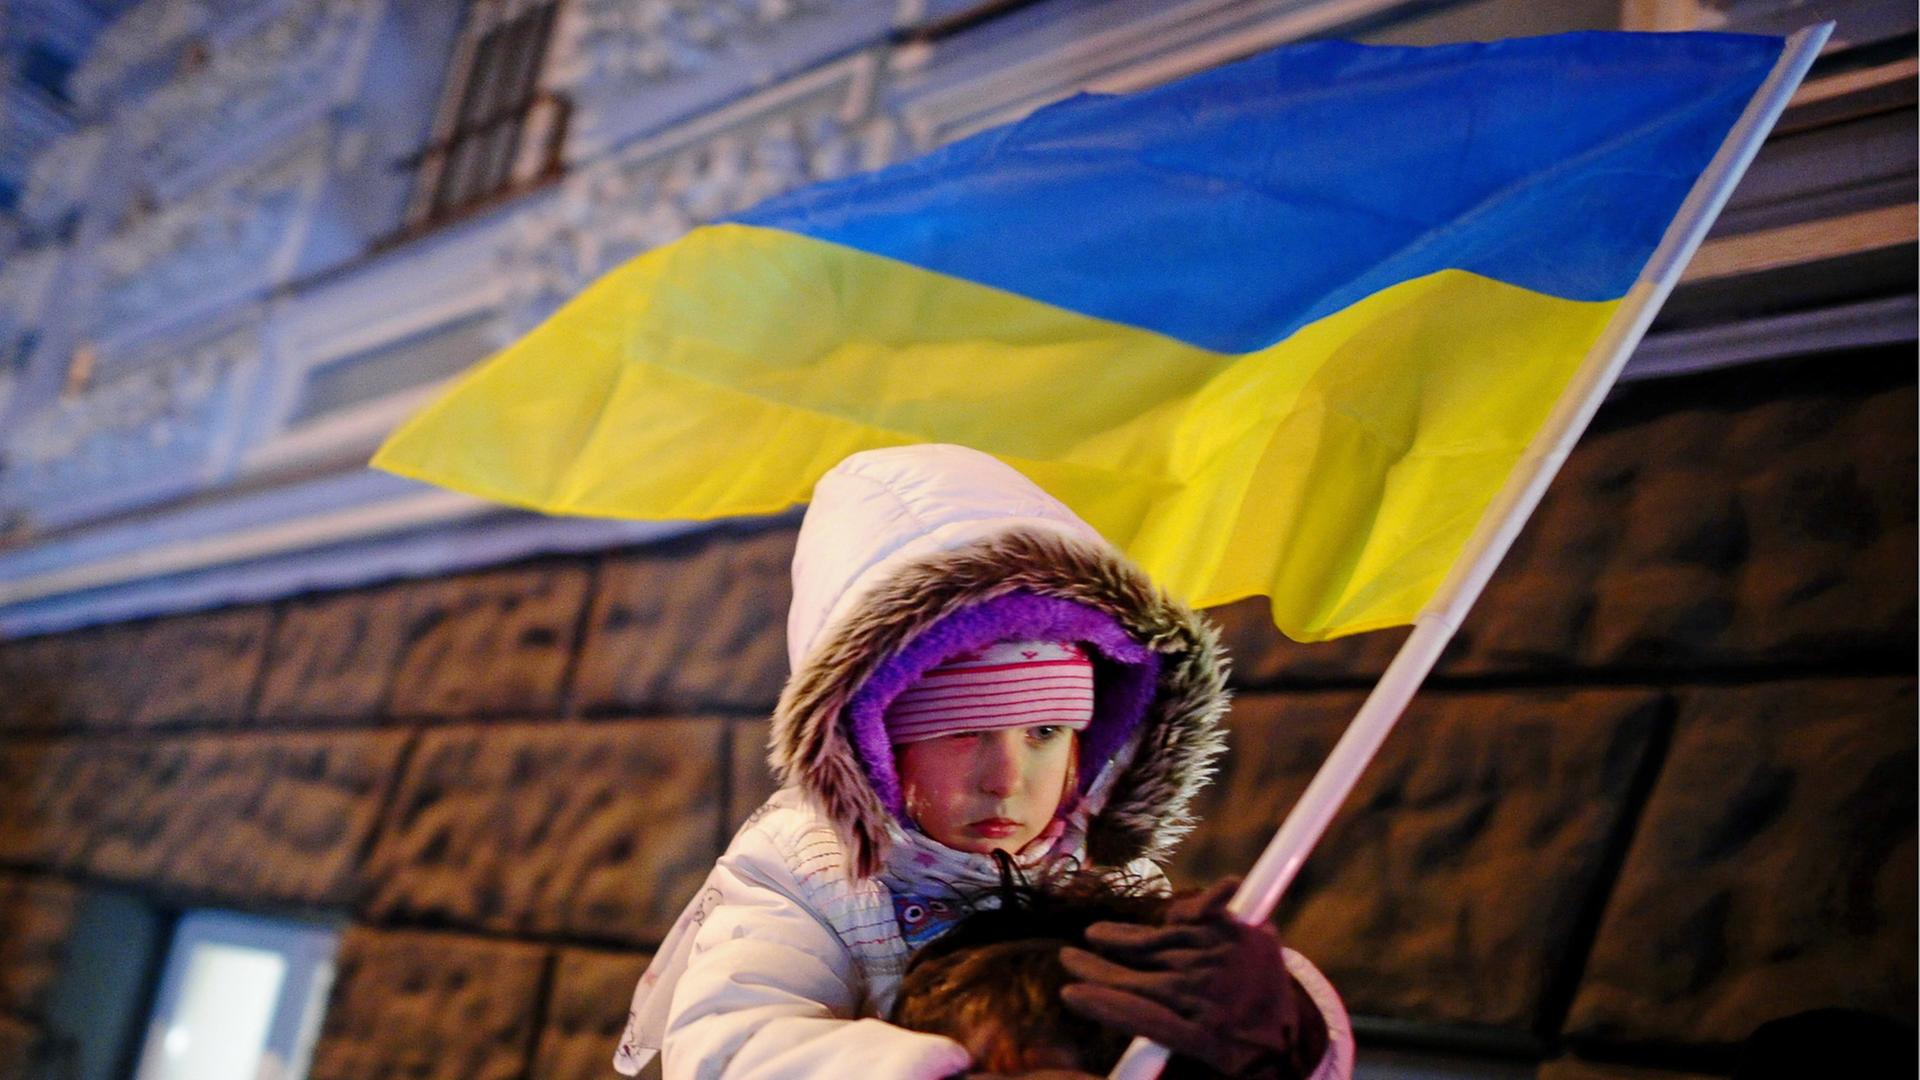 Vater trägt sein Kind, das in der Hand eine ukrainische Flagge hält, bei Protesten in Kiew am 30.11.2013